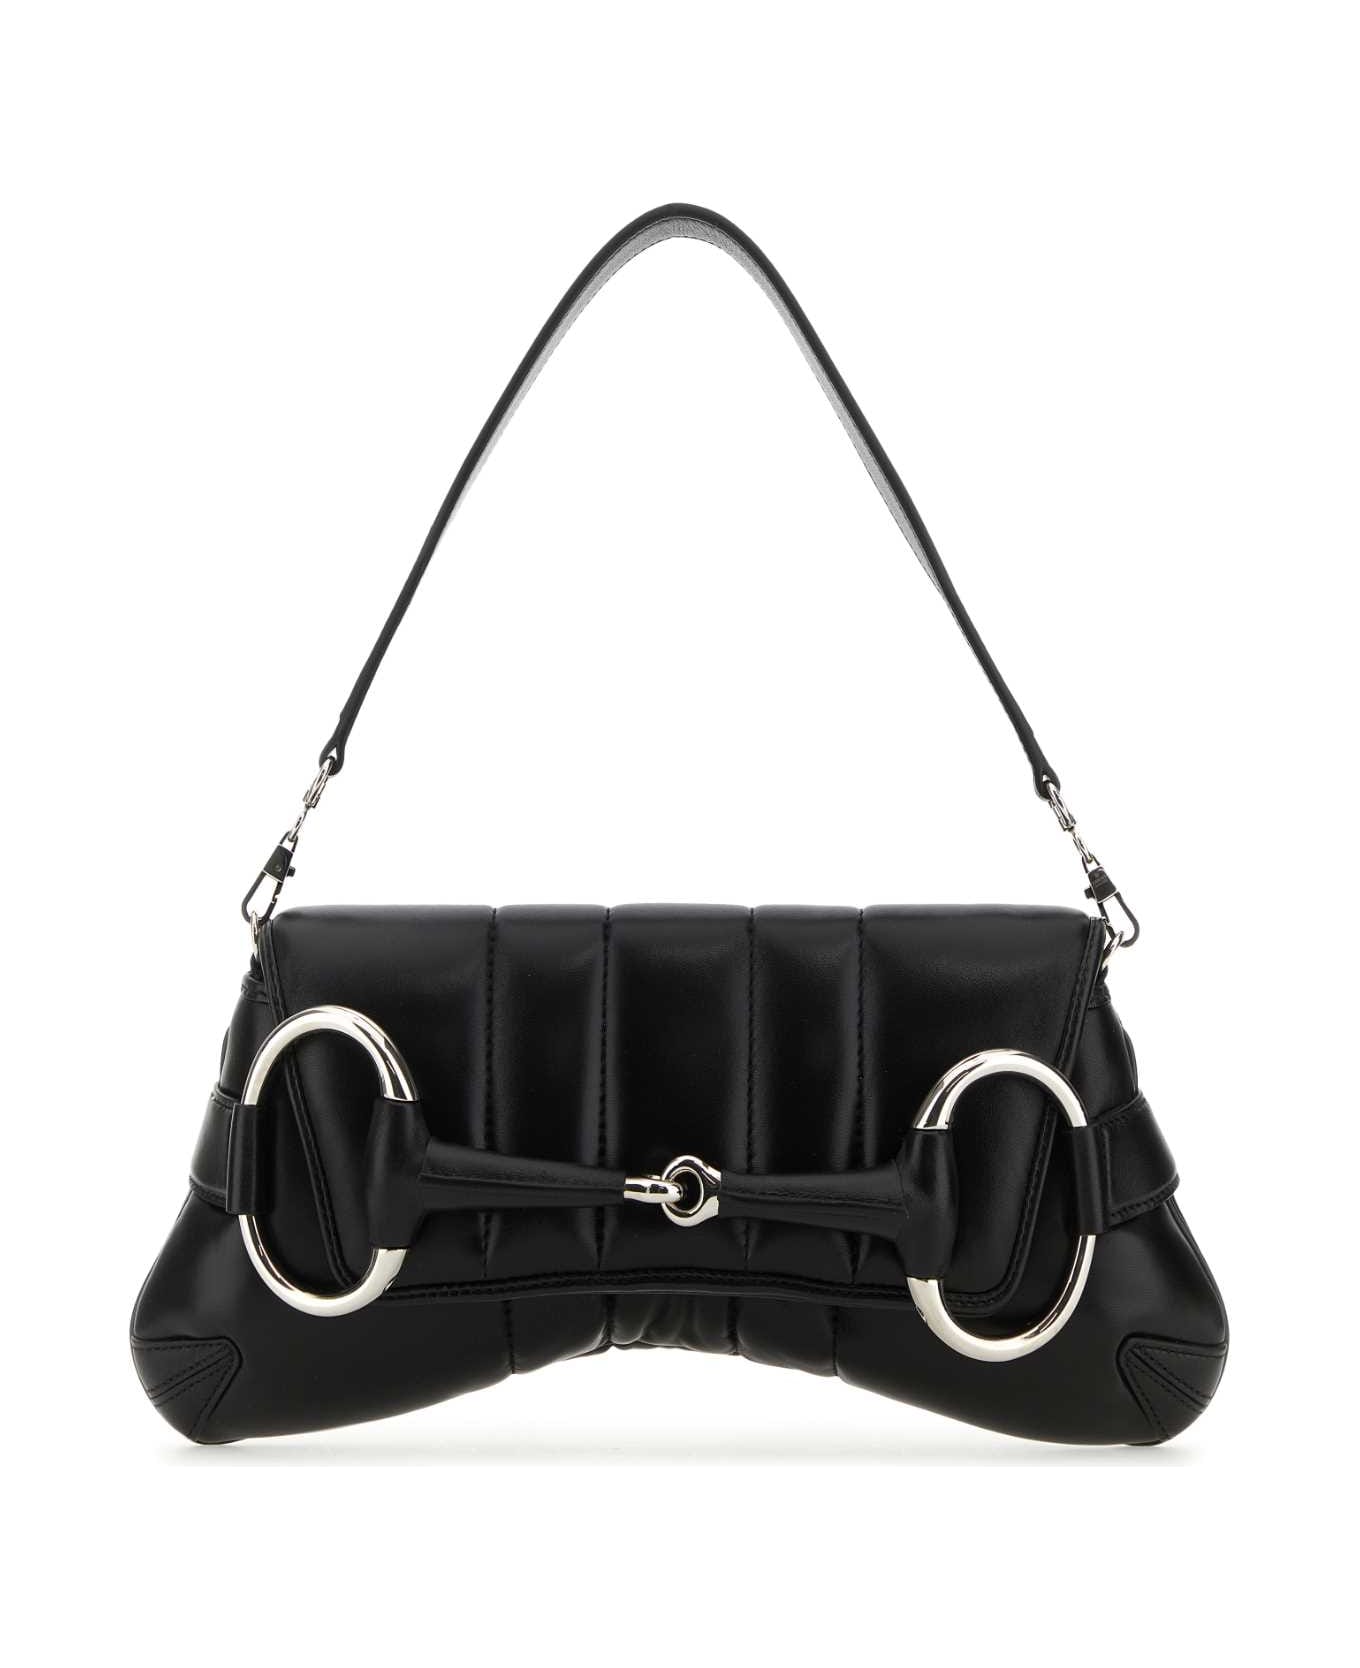 Gucci Black Medium Gucci Horsebit Chain Leather Shoulder Bag - 1000